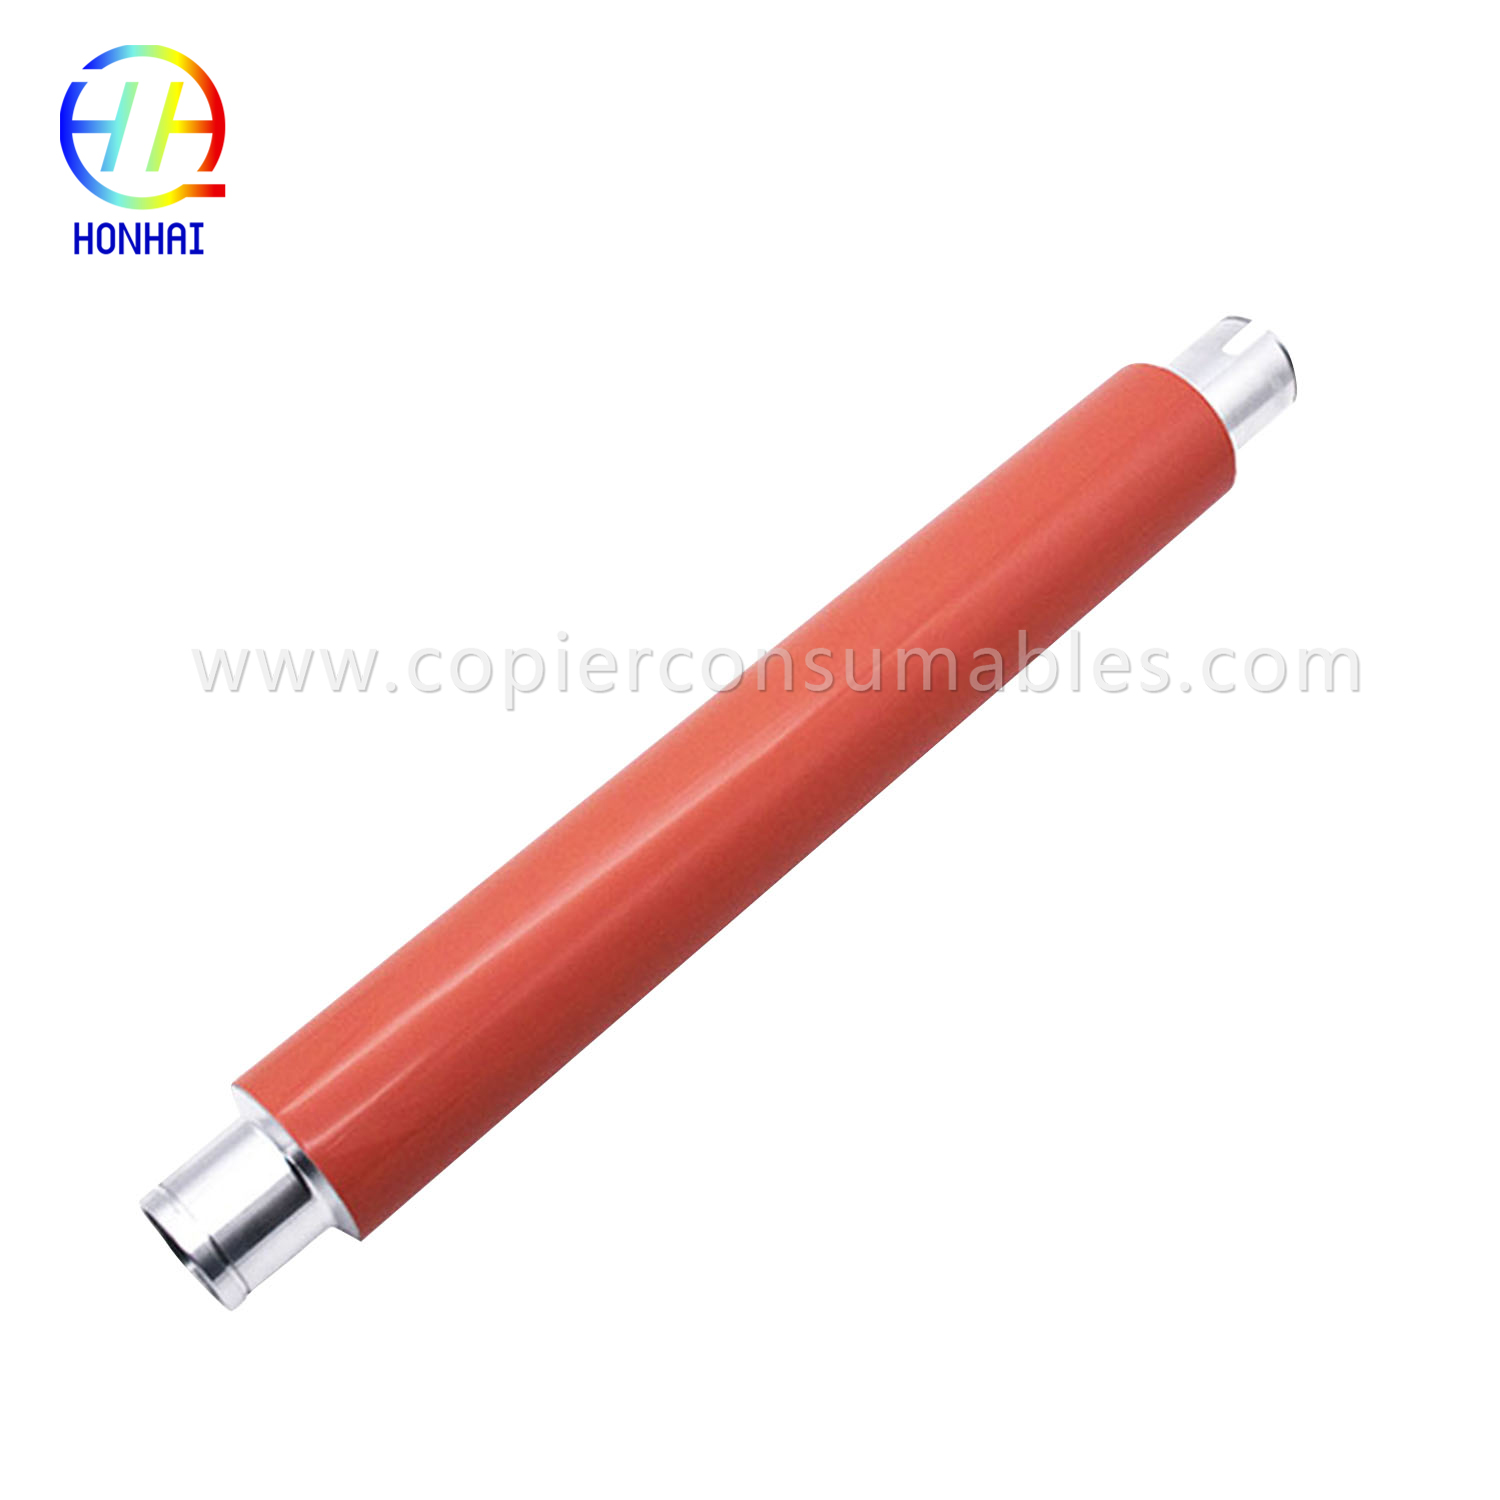 Upper Fuser Roller foar HP Laserjet 9000 9040 9050 (RB2-5948-000) 要橙色那条-1 拷贝